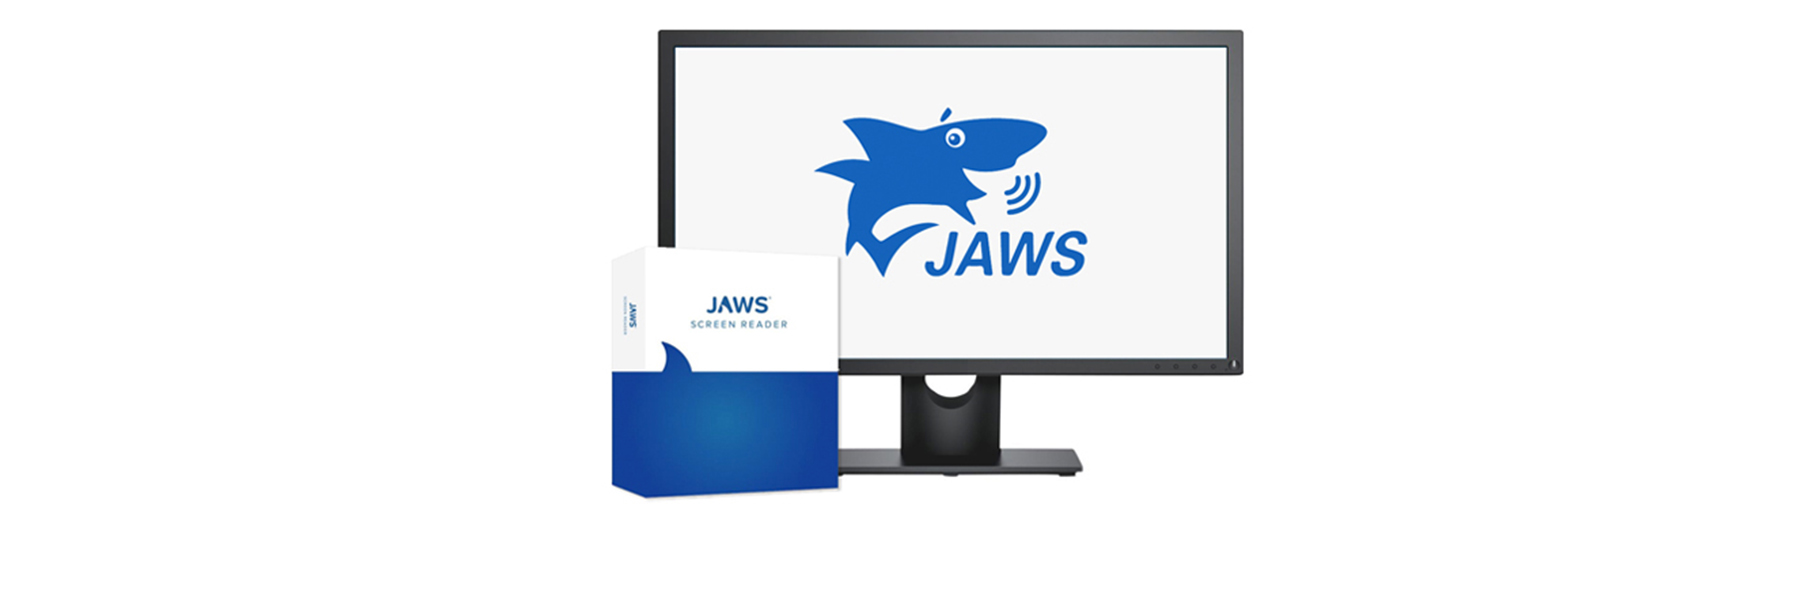 VORSCHLAG: Jaws Screenreader Logo